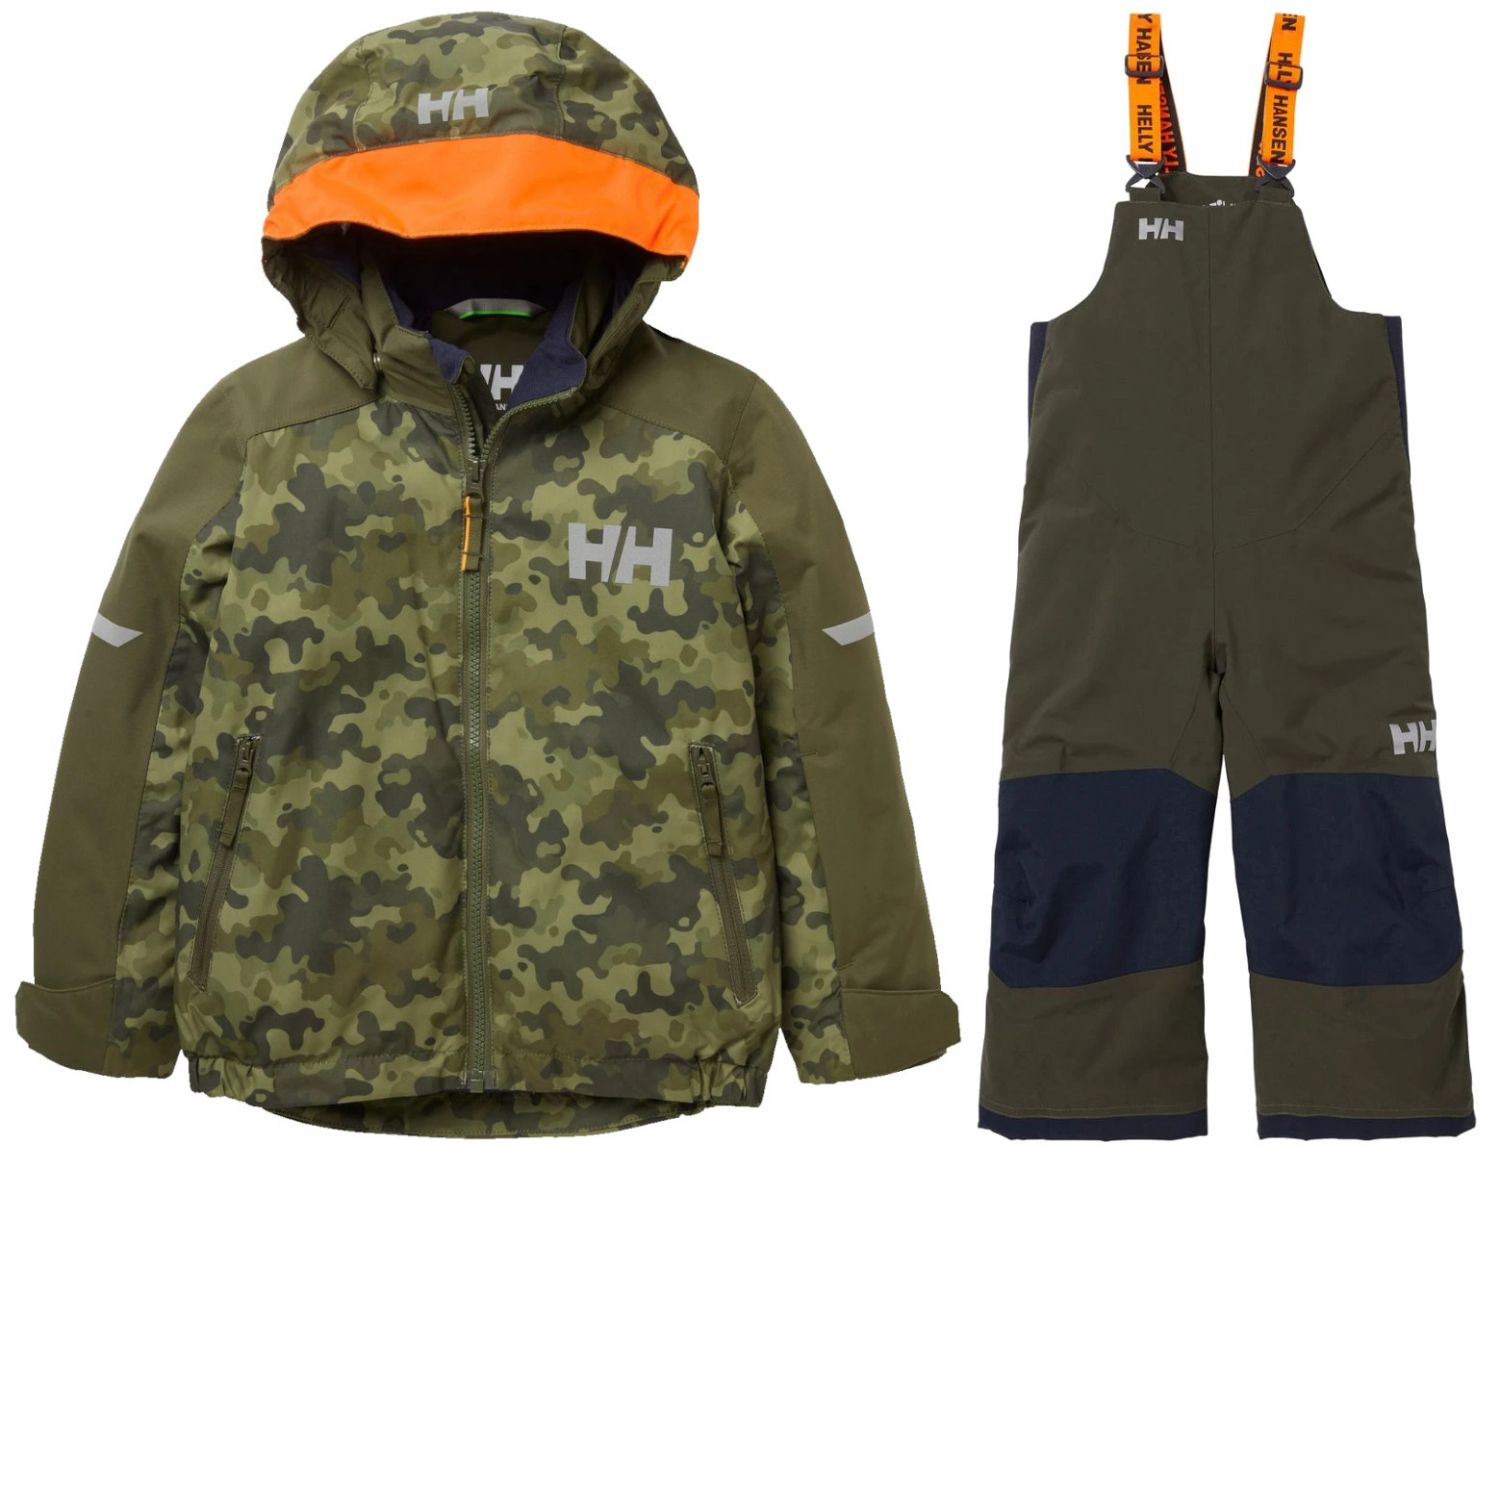 Helly Hansen K Legend/Rider 2.0 Ins, ski jacket, junior, green